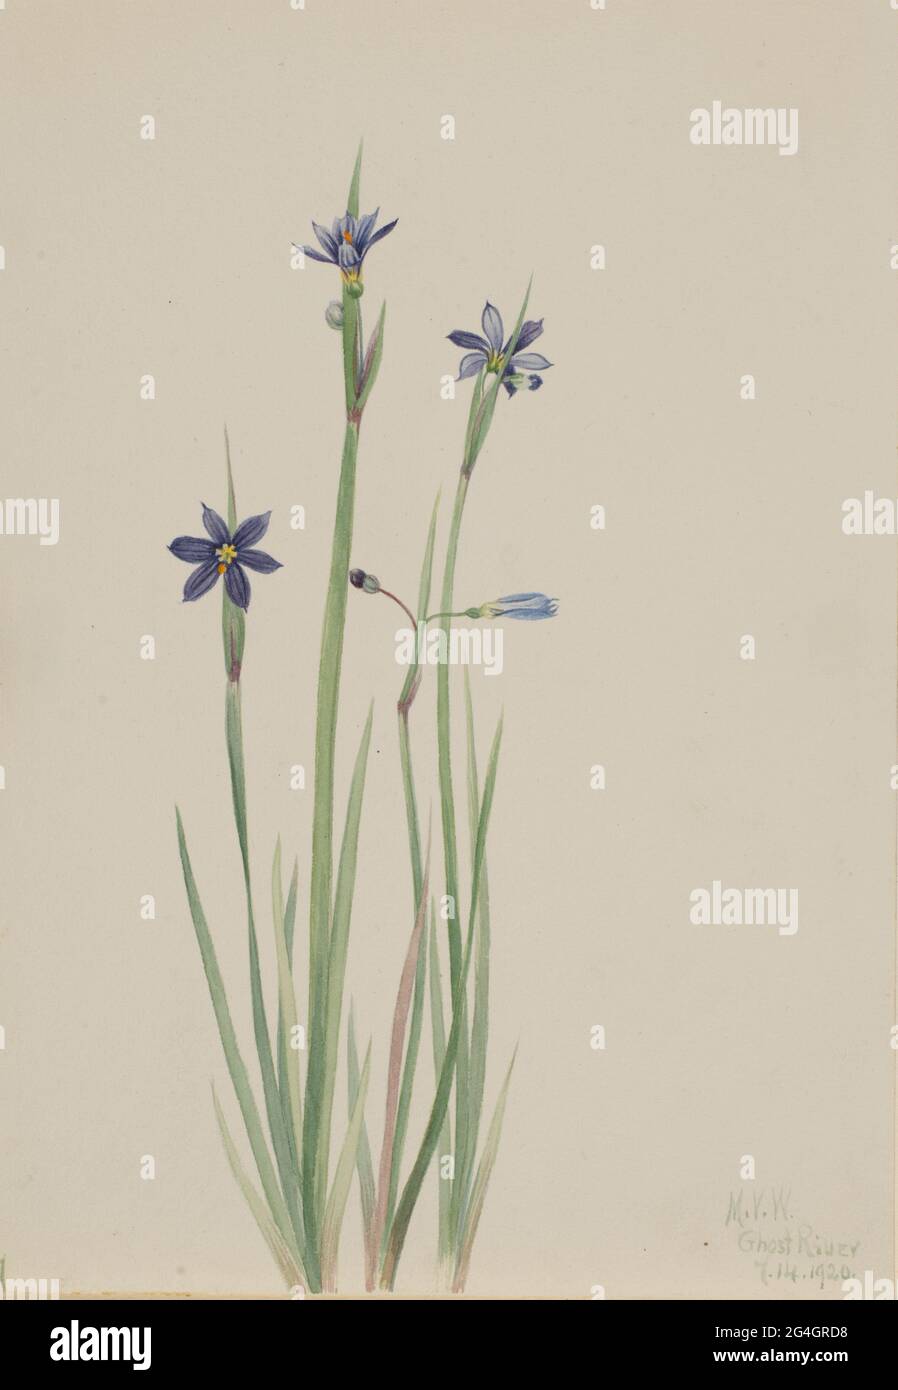 Blue-eyed-grass (Sisyrinchium angustifolium), 1920. Stock Photo